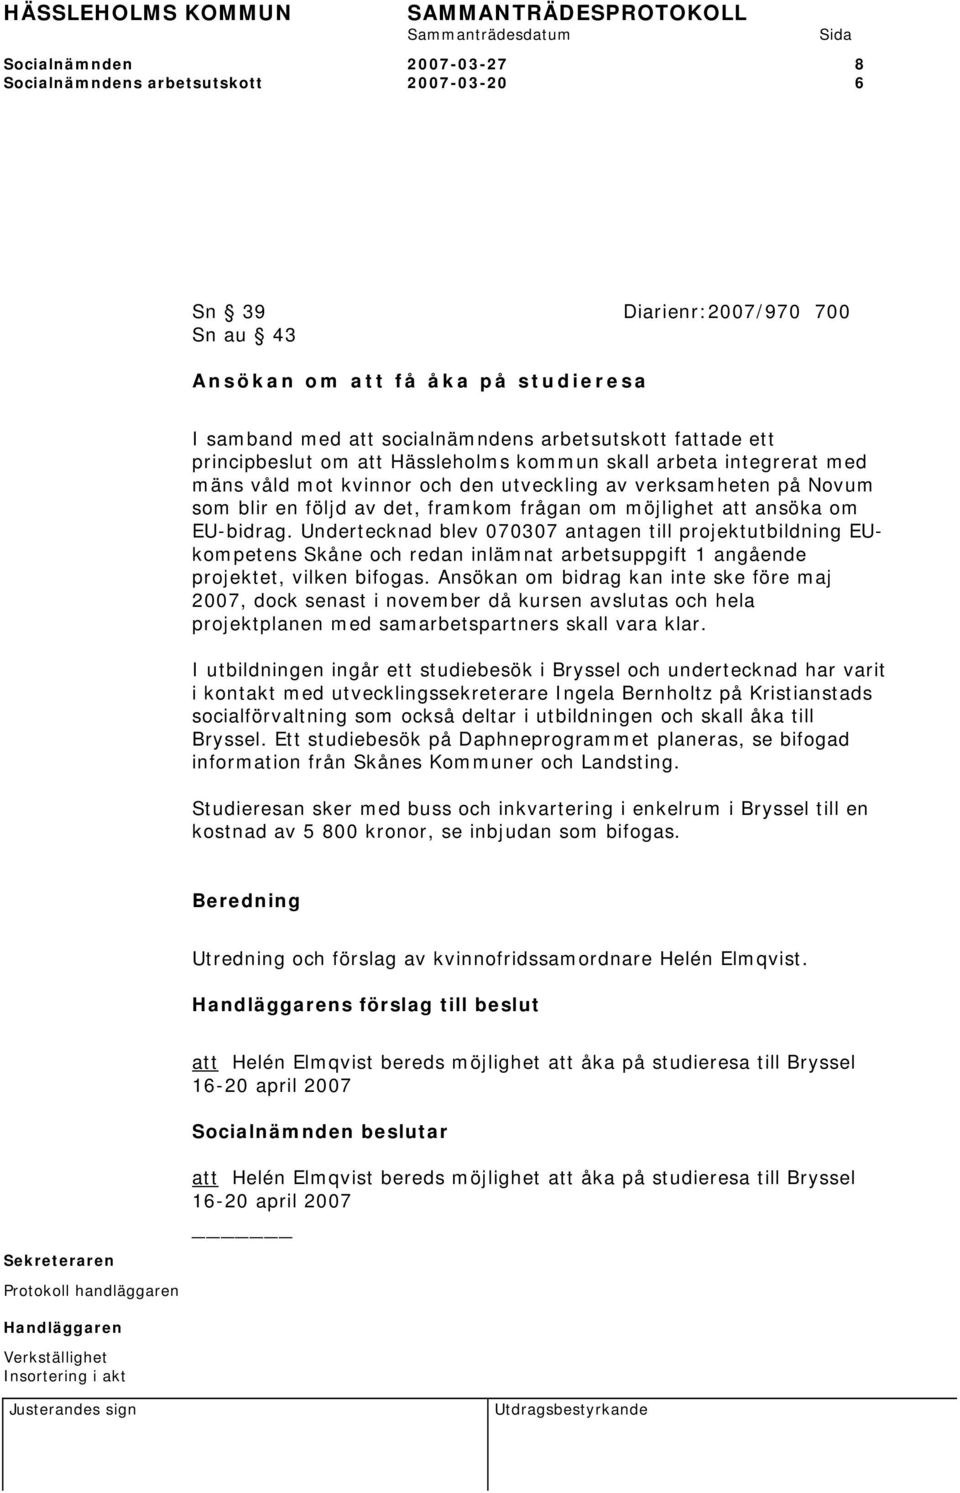 ansöka om EU-bidrag. Undertecknad blev 070307 antagen till projektutbildning EUkompetens Skåne och redan inlämnat arbetsuppgift 1 angående projektet, vilken bifogas.